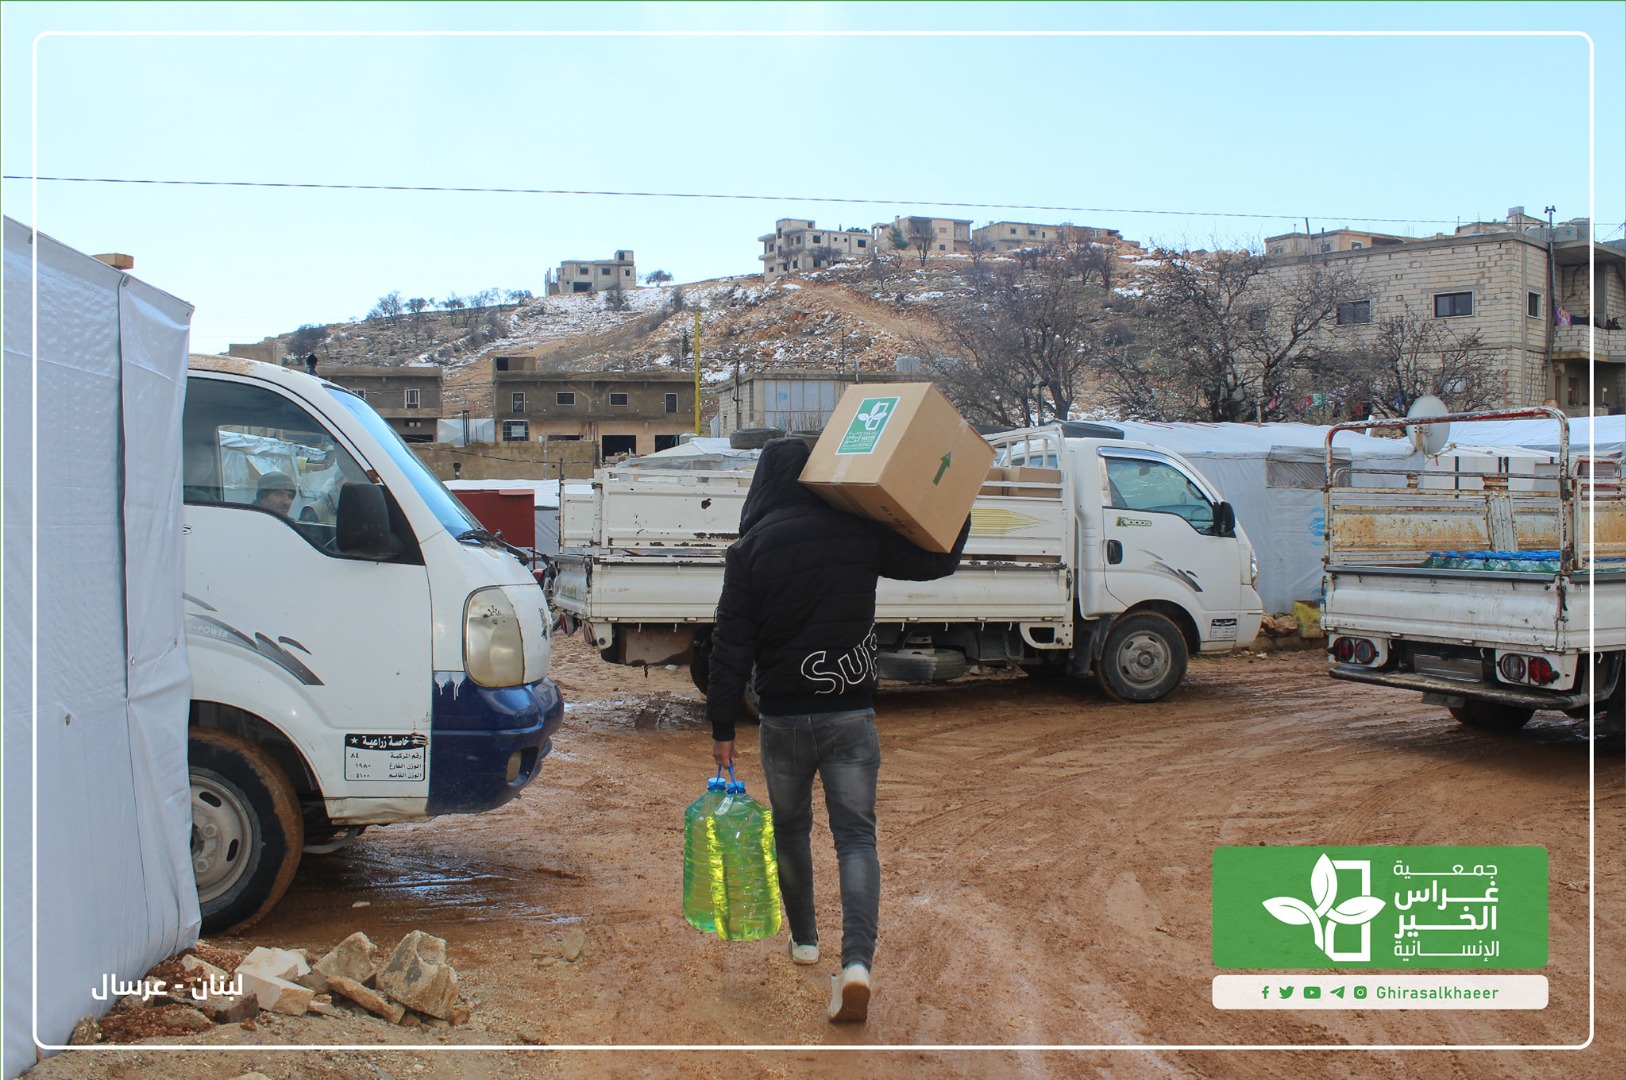 حملة شتاء دافئ 7 استمرار توزيع الإغاثة للاجئين في مخيمات عرسال 2021